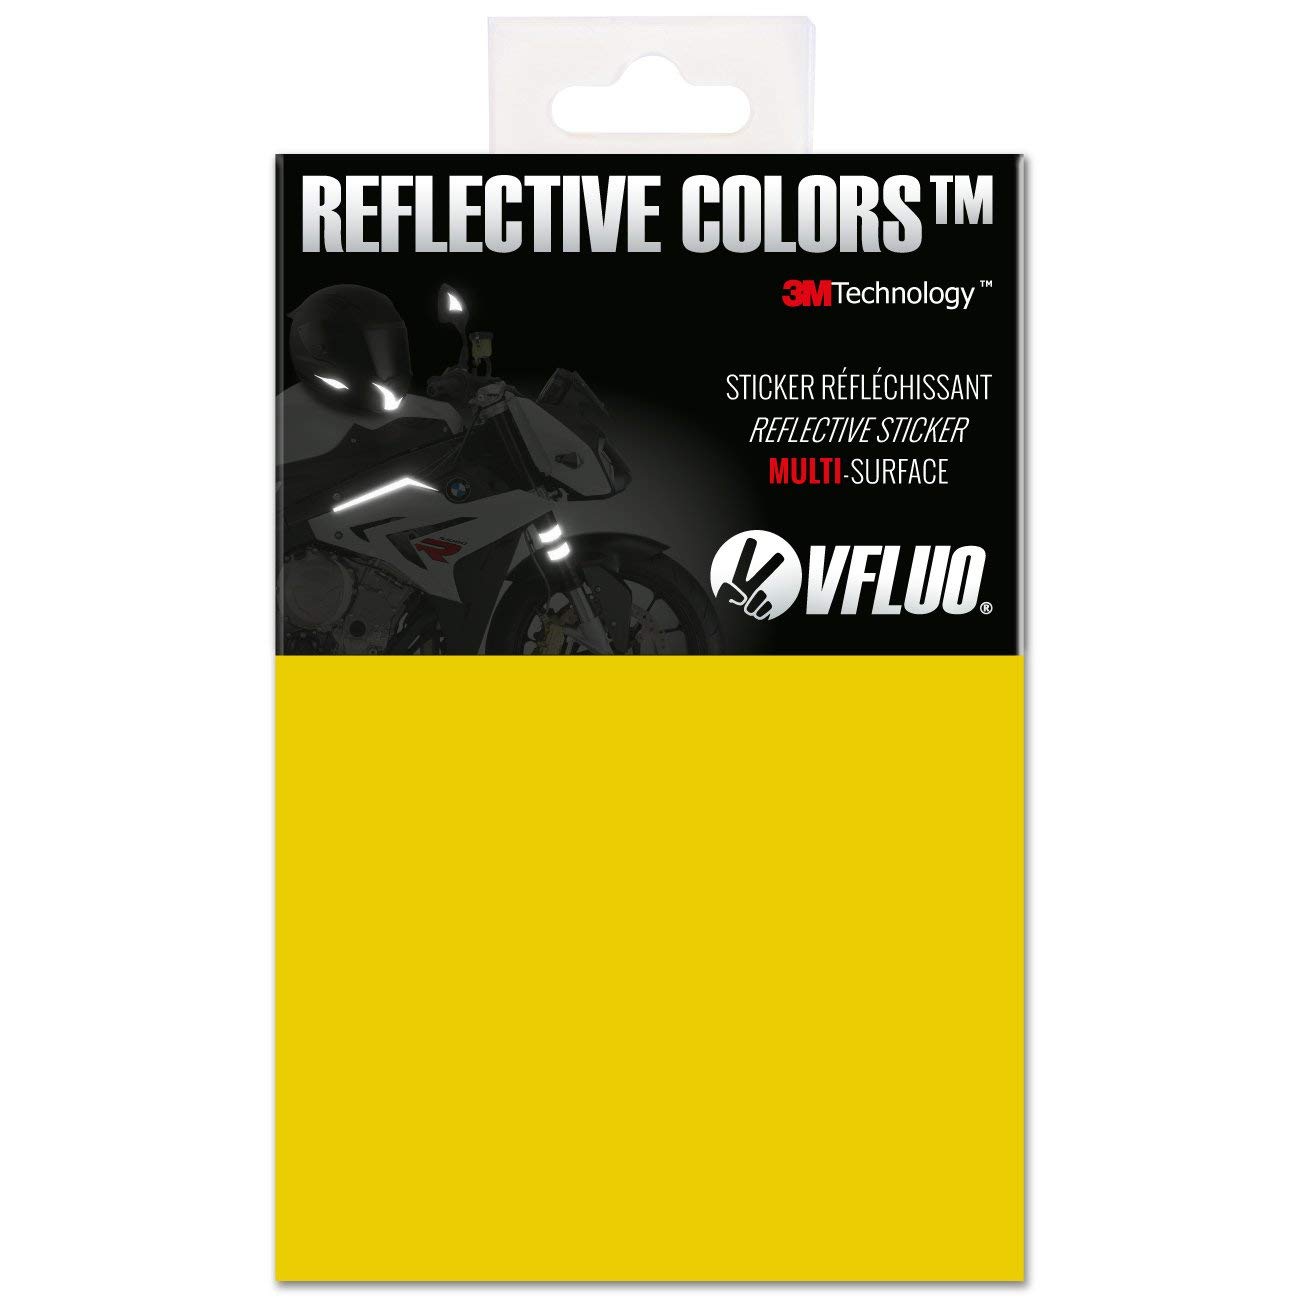 VFLUO 3M Reflective Colors™, Universal DIY Kit, reflektierende Aufkleber für Motorradhelme, Motorrad, Fahrrad, 3M Technology™, 10 x 15 cm Reflektoren Blatt, Zitronengelb von VFLUO